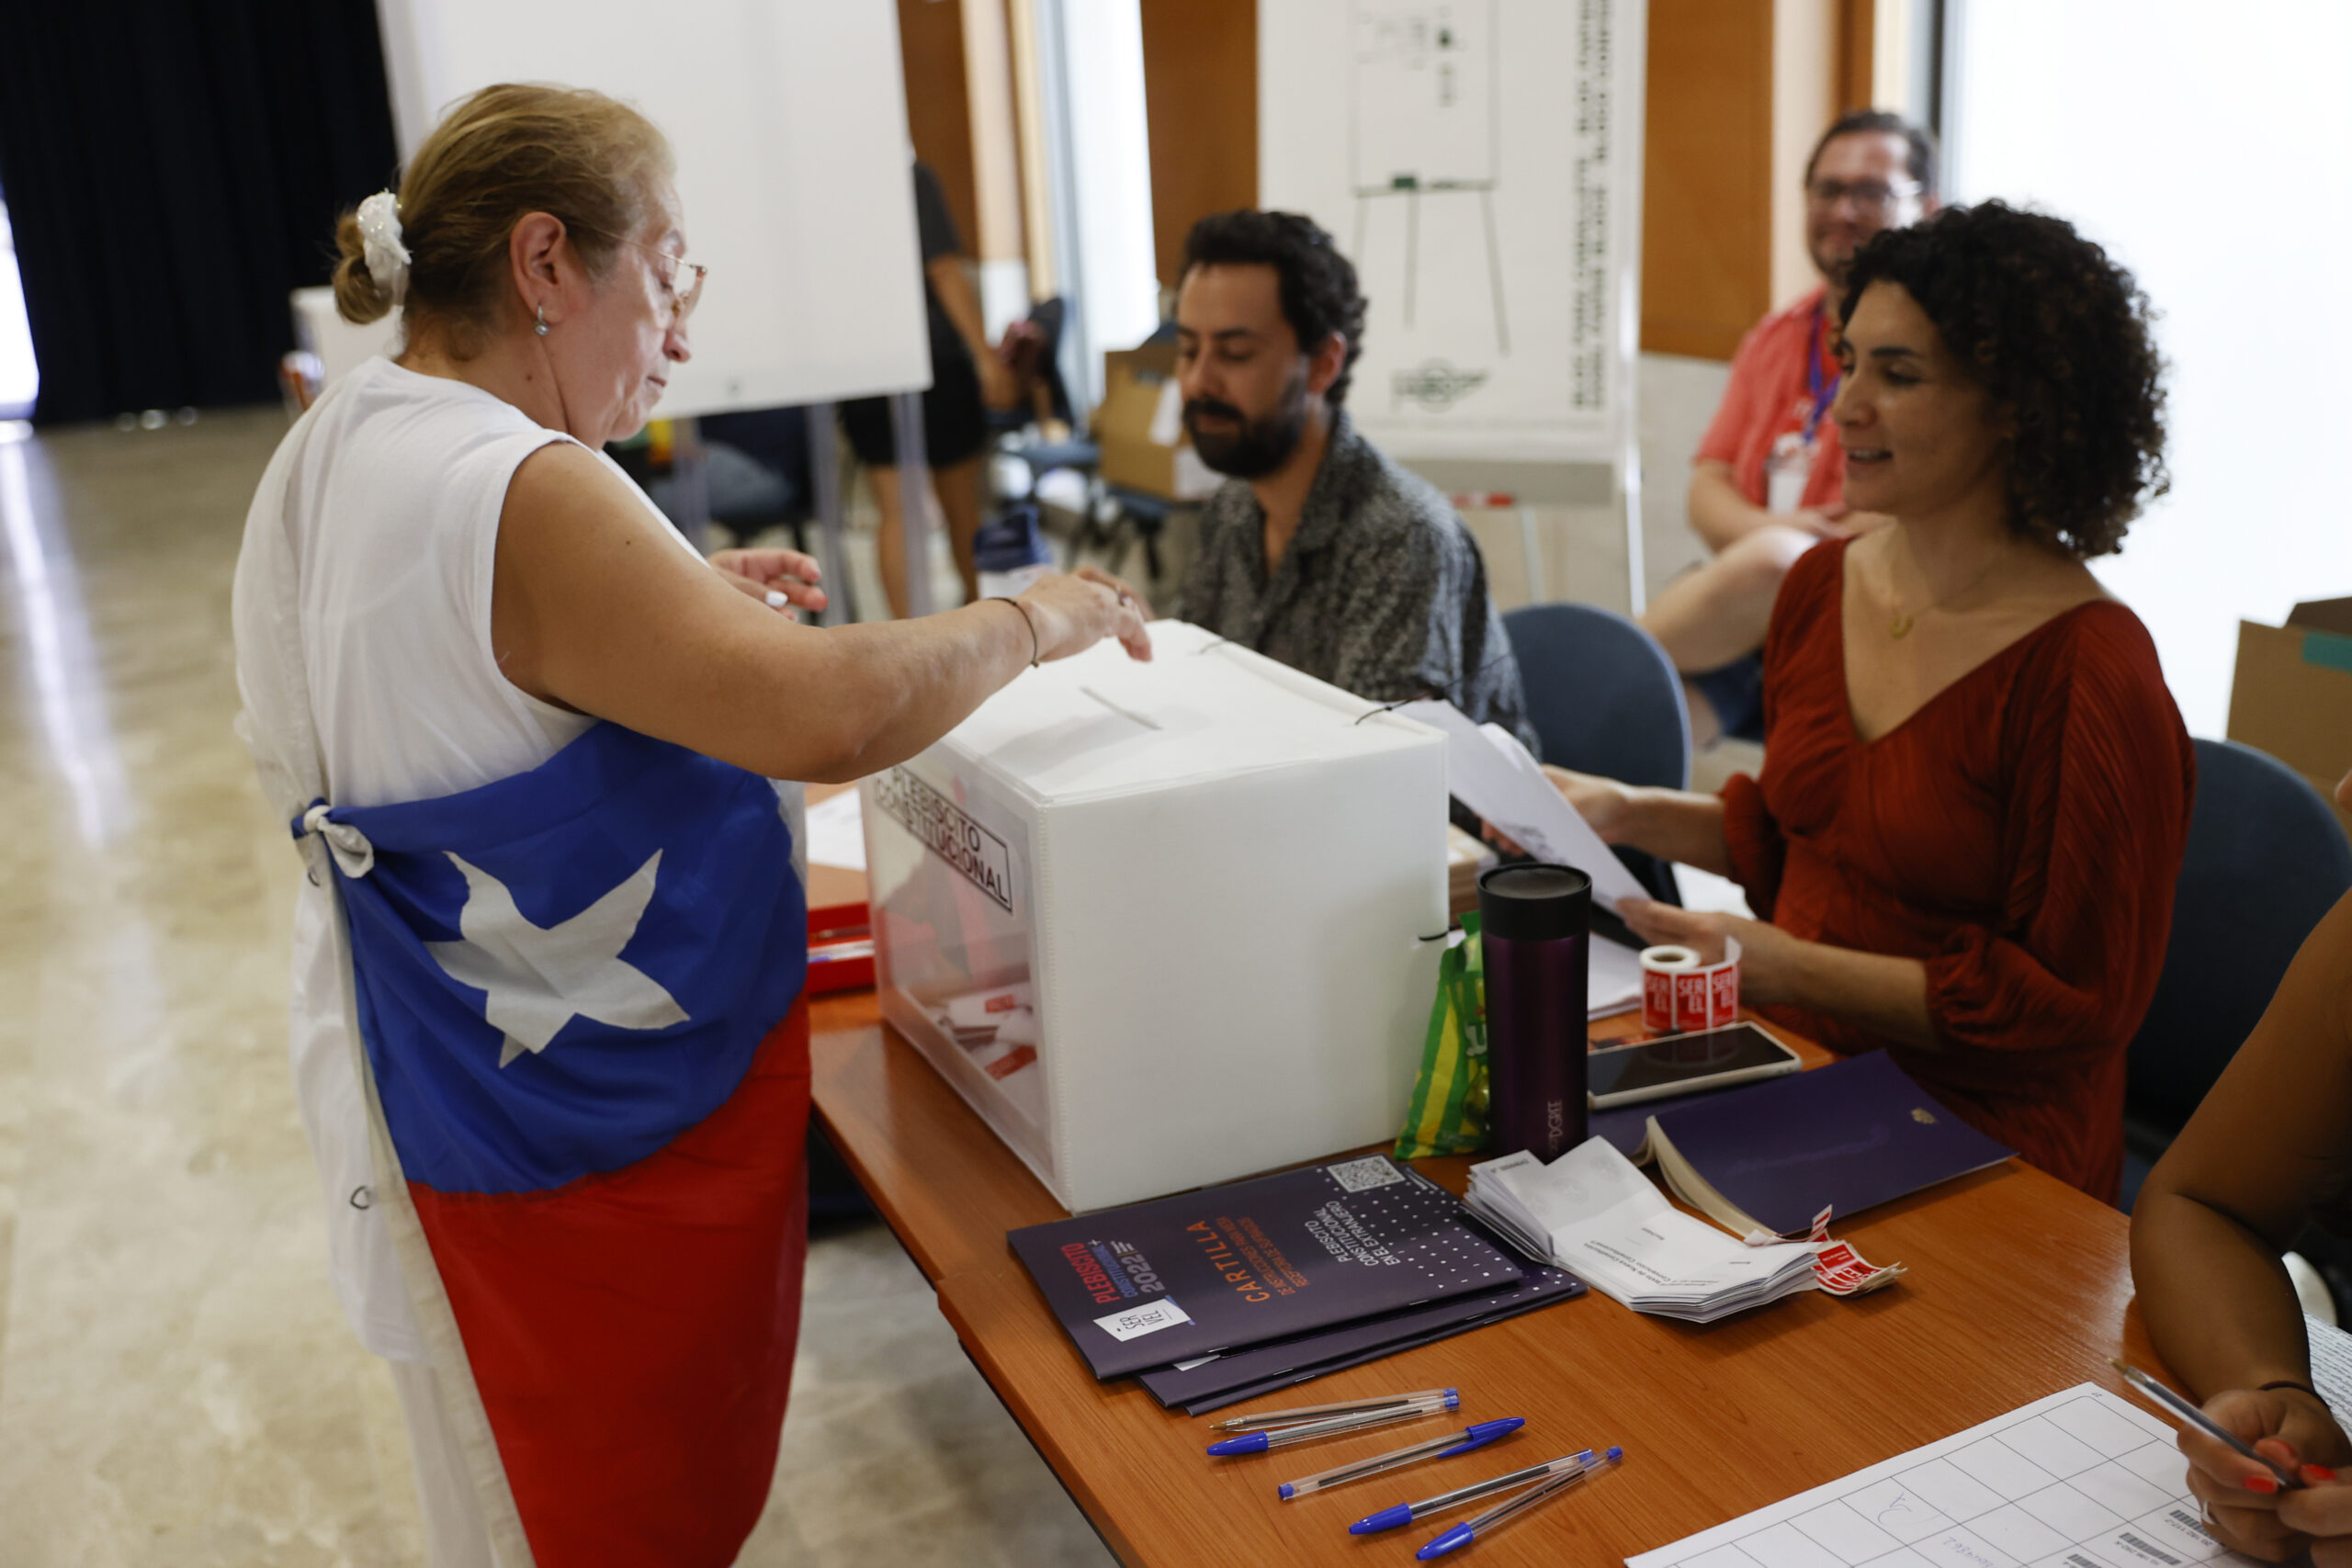 Triunfa grandemente el rechazo a la nueva constitución de Chile